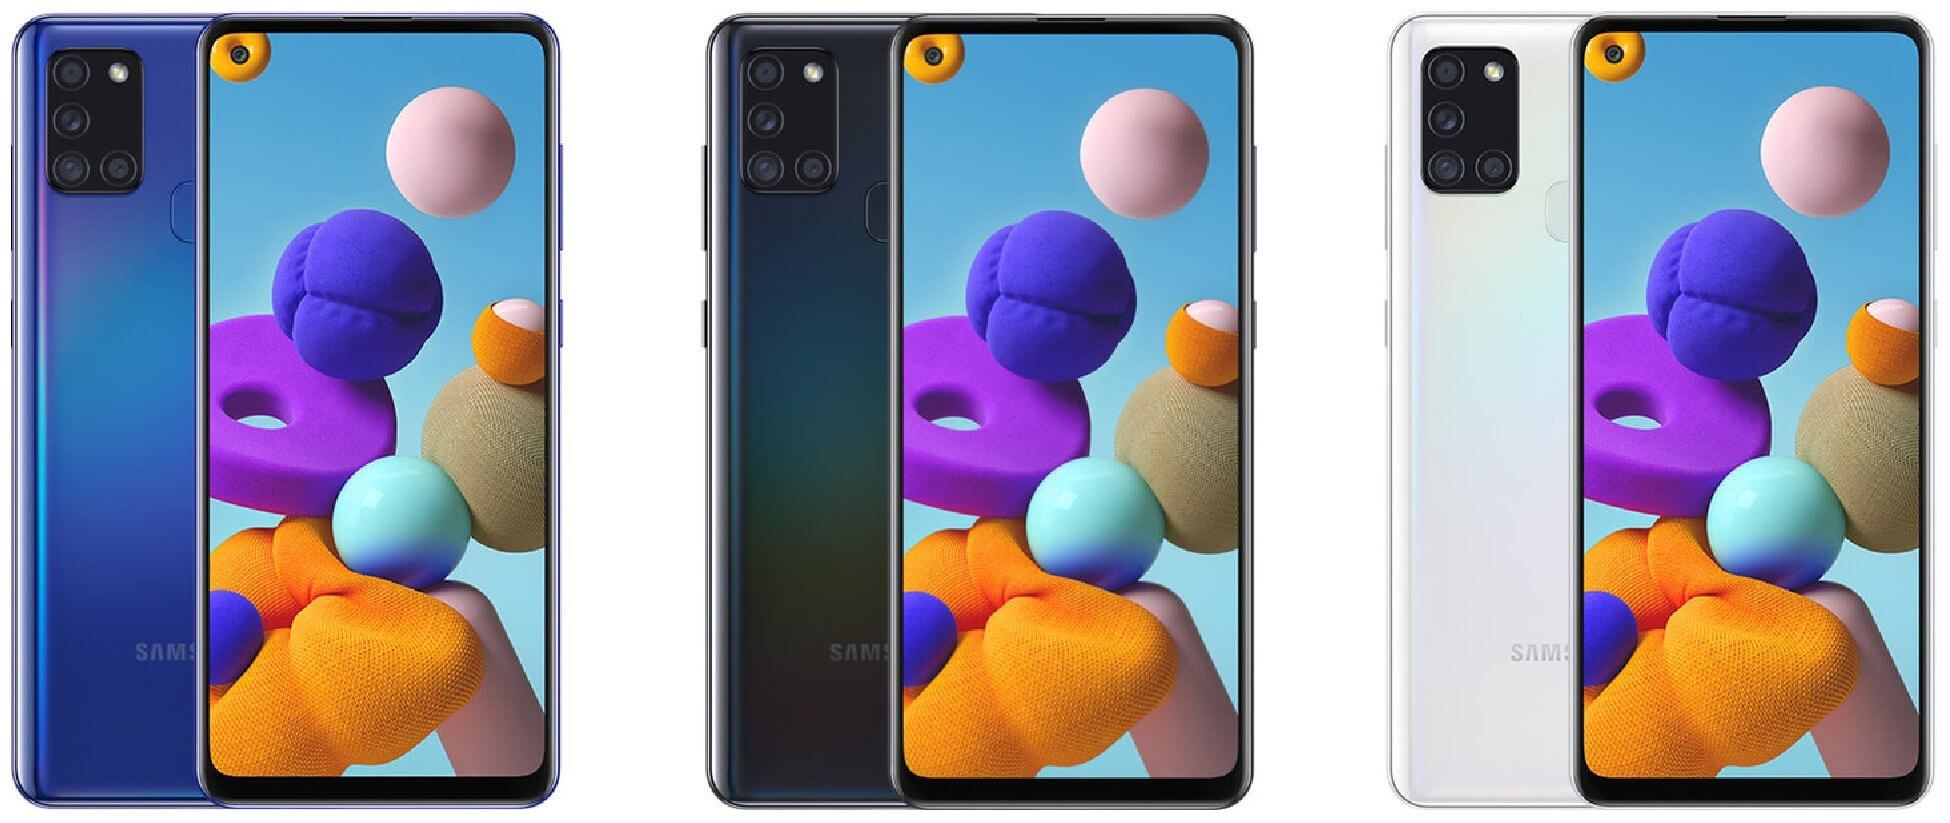 Samsung Galaxy A21s tanıtıldı: İşte özellikleri ve fiyatı